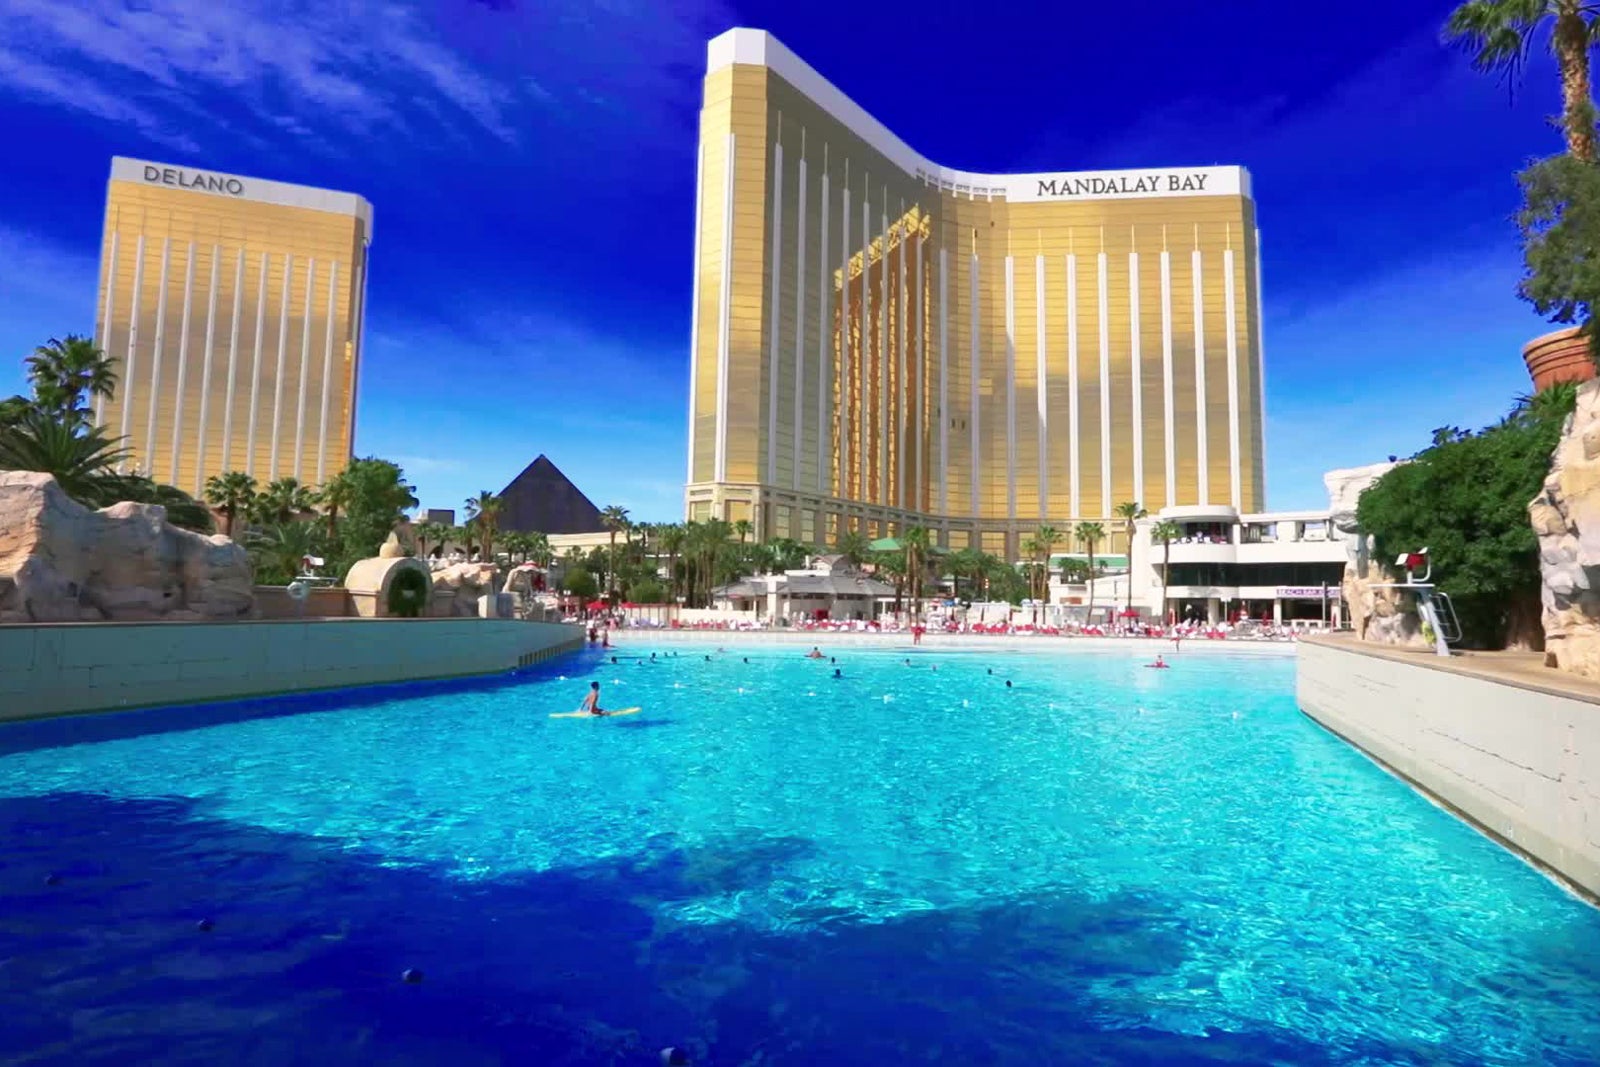 Best Hotels in Las Vegas, NV